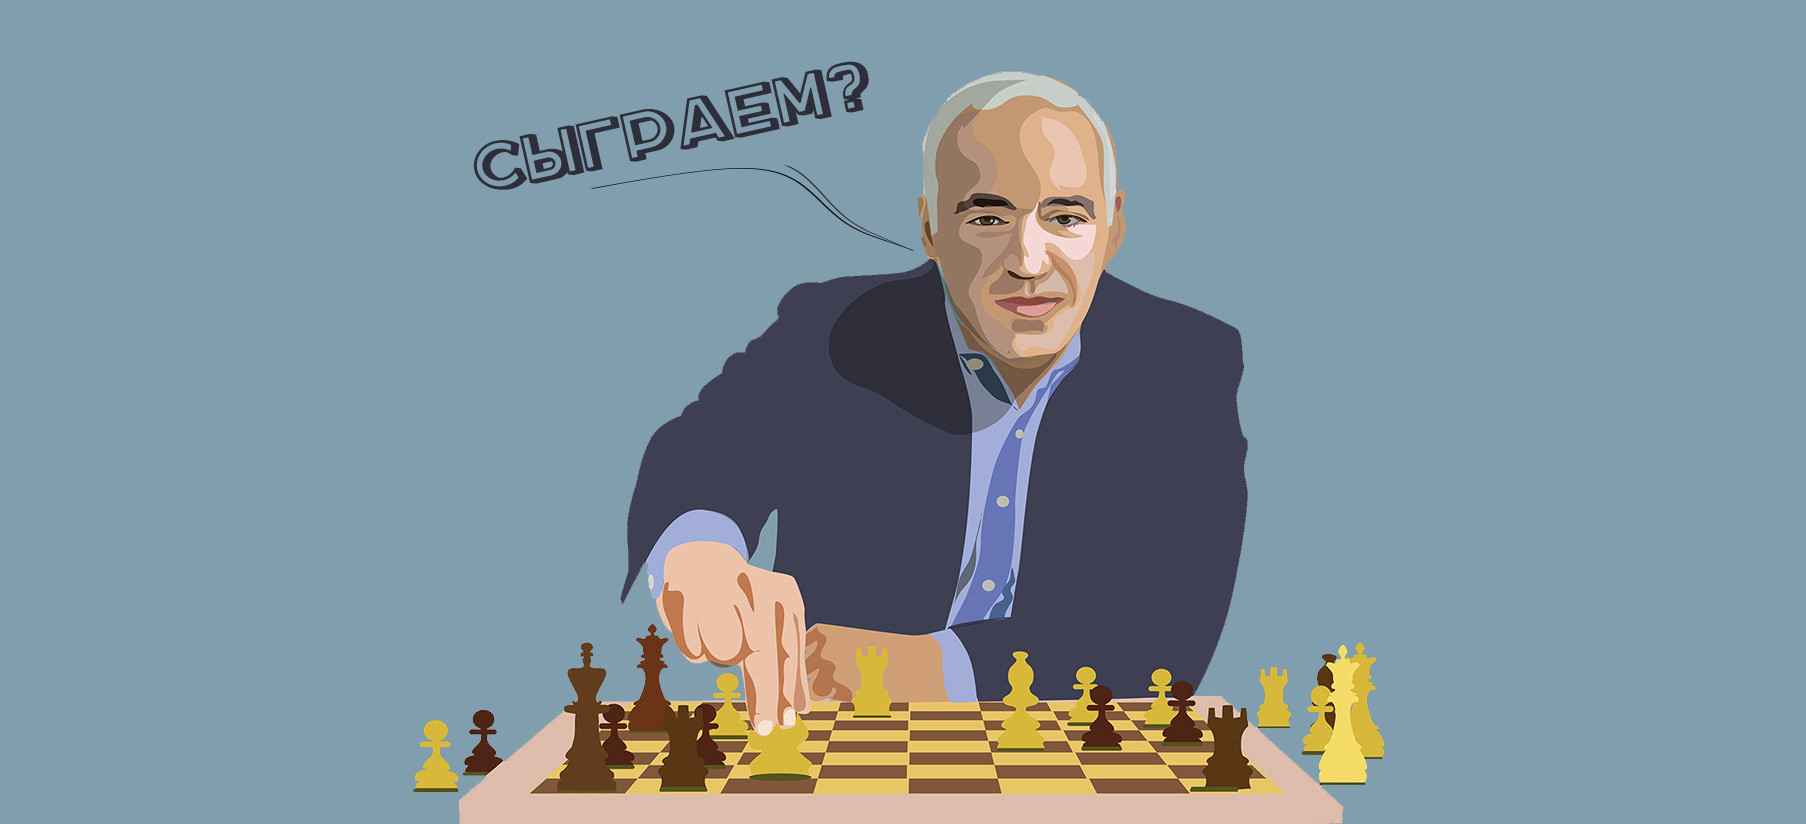 Тест на мышление "Шахматная дуэль": поставьте мат в два хода